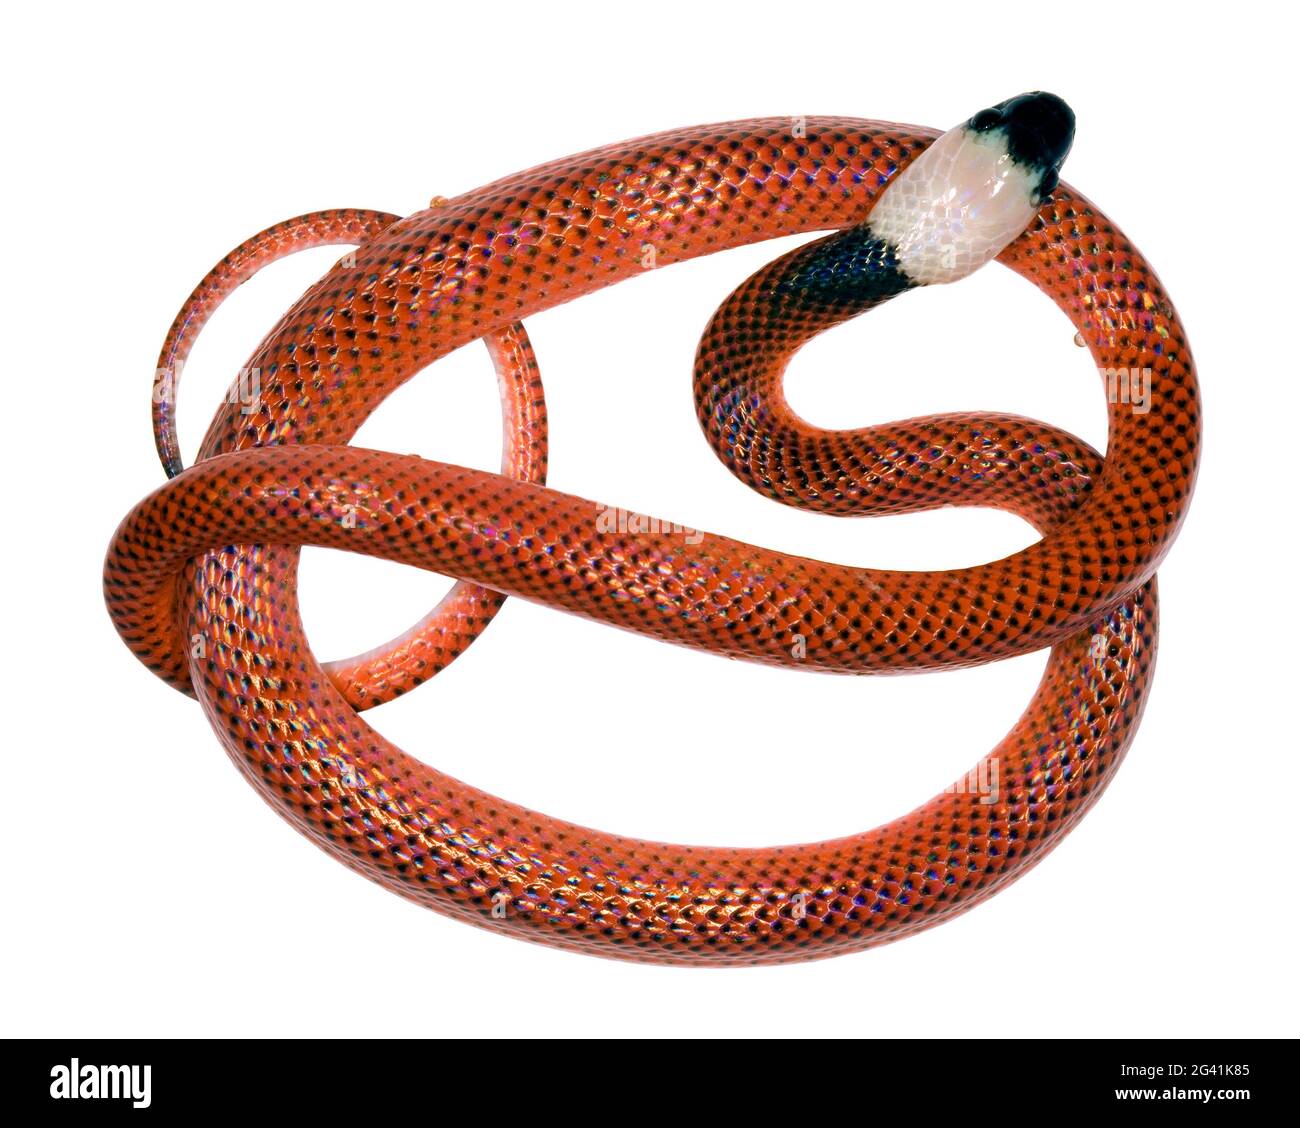 Juvenile Chonta oder Mussarana (Clelia clelia) die juvenilen sind Korallenschlangen-Mimiken, wechseln aber als Erwachsener zu schwarz Stockfoto